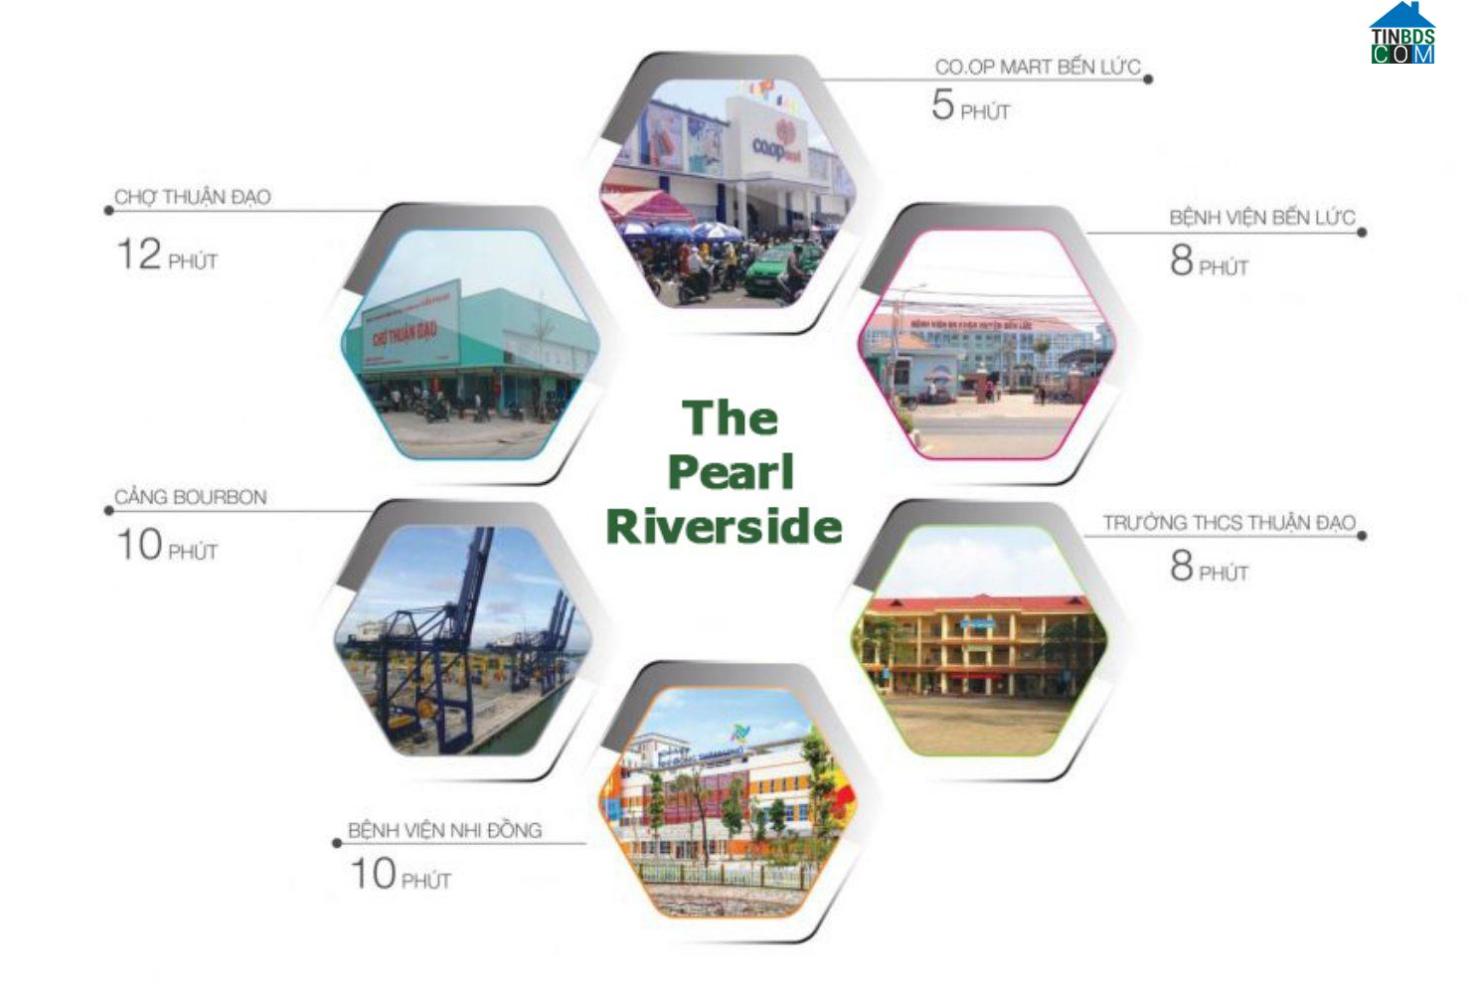 Liên kết tiện ích dự án The Pearl Riverside